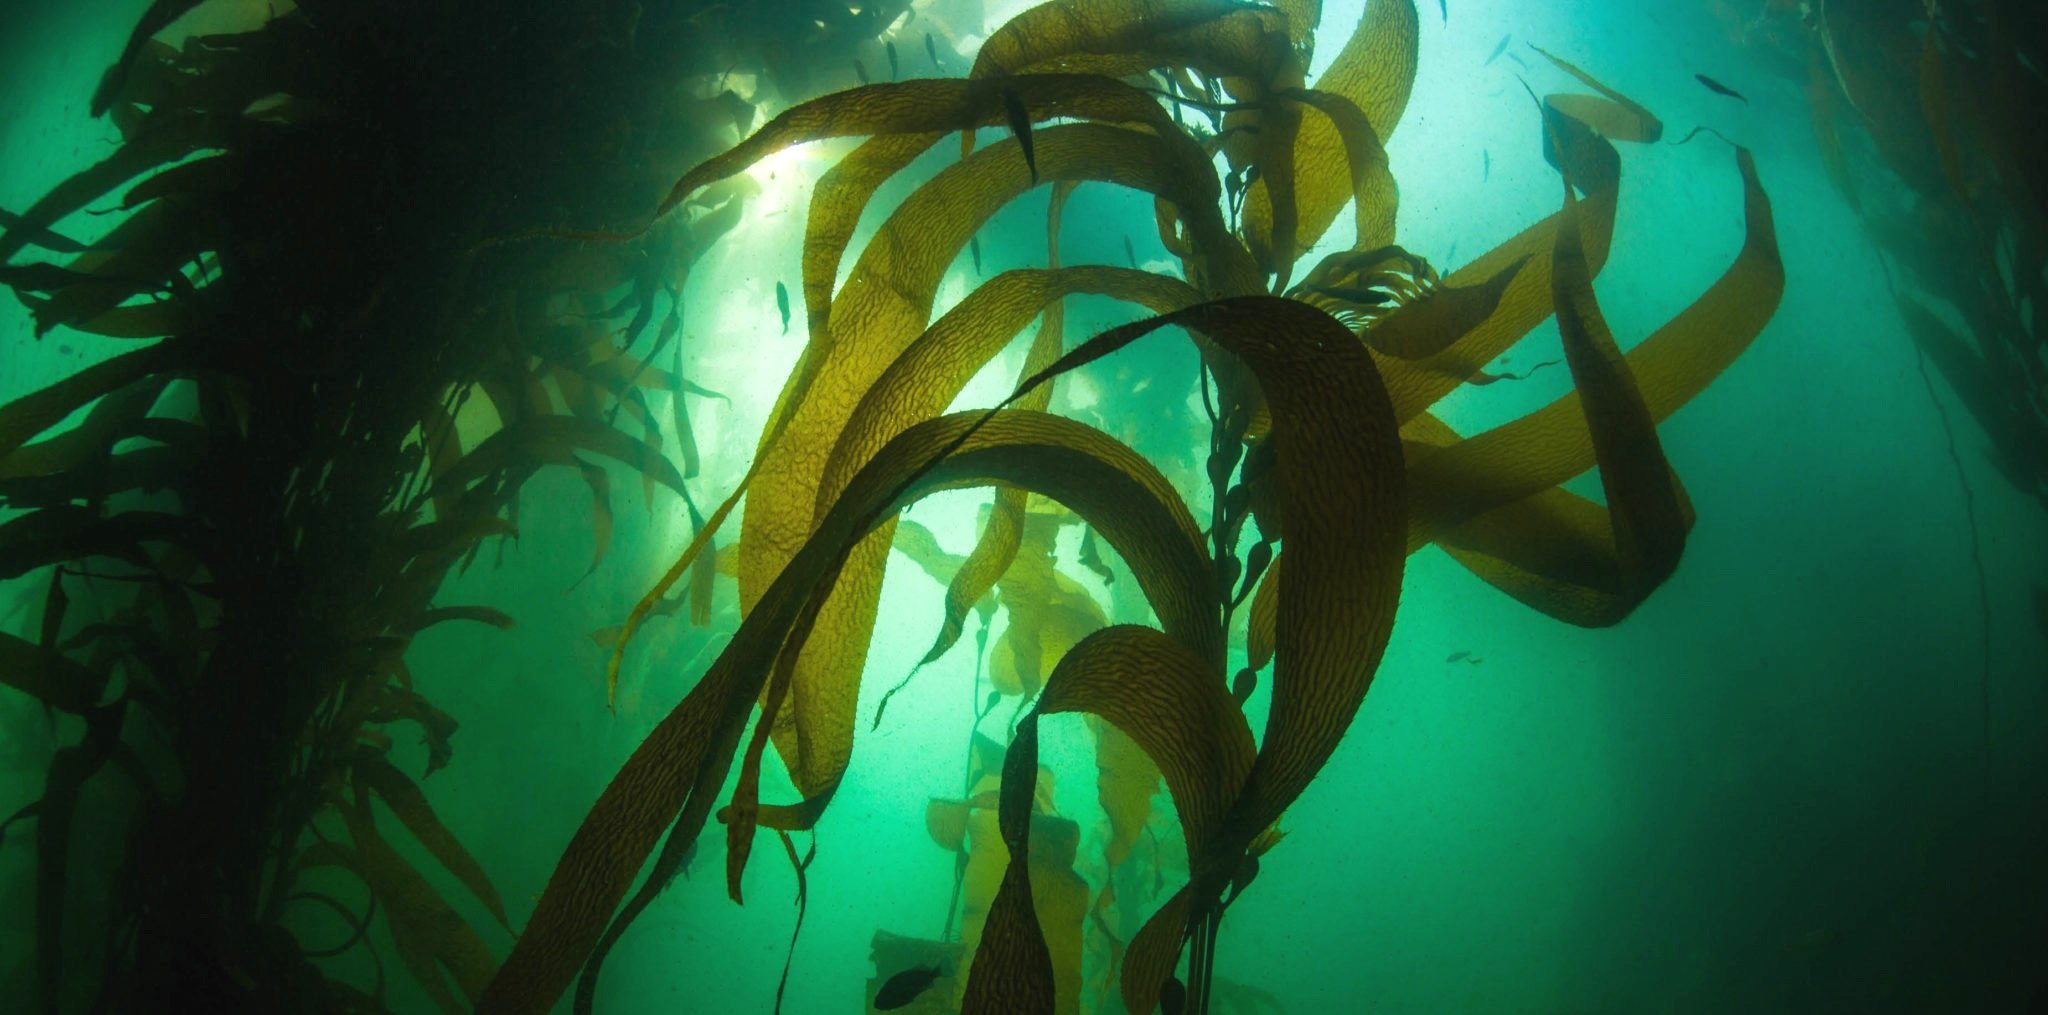   海底森林成為糧食危機救星？     海藻轉機？   